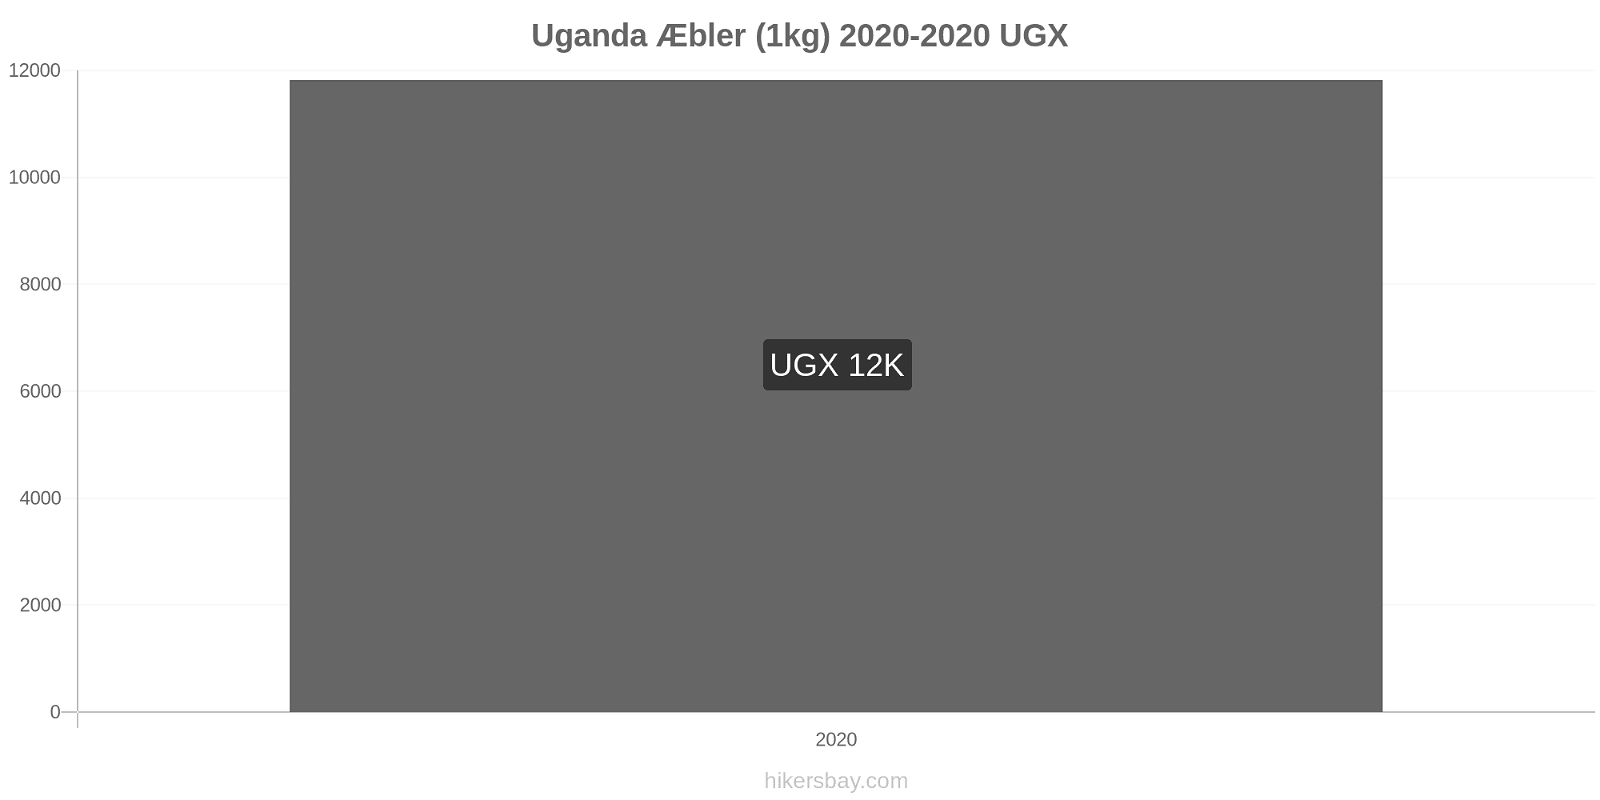 Uganda prisændringer Æbler (1kg) hikersbay.com